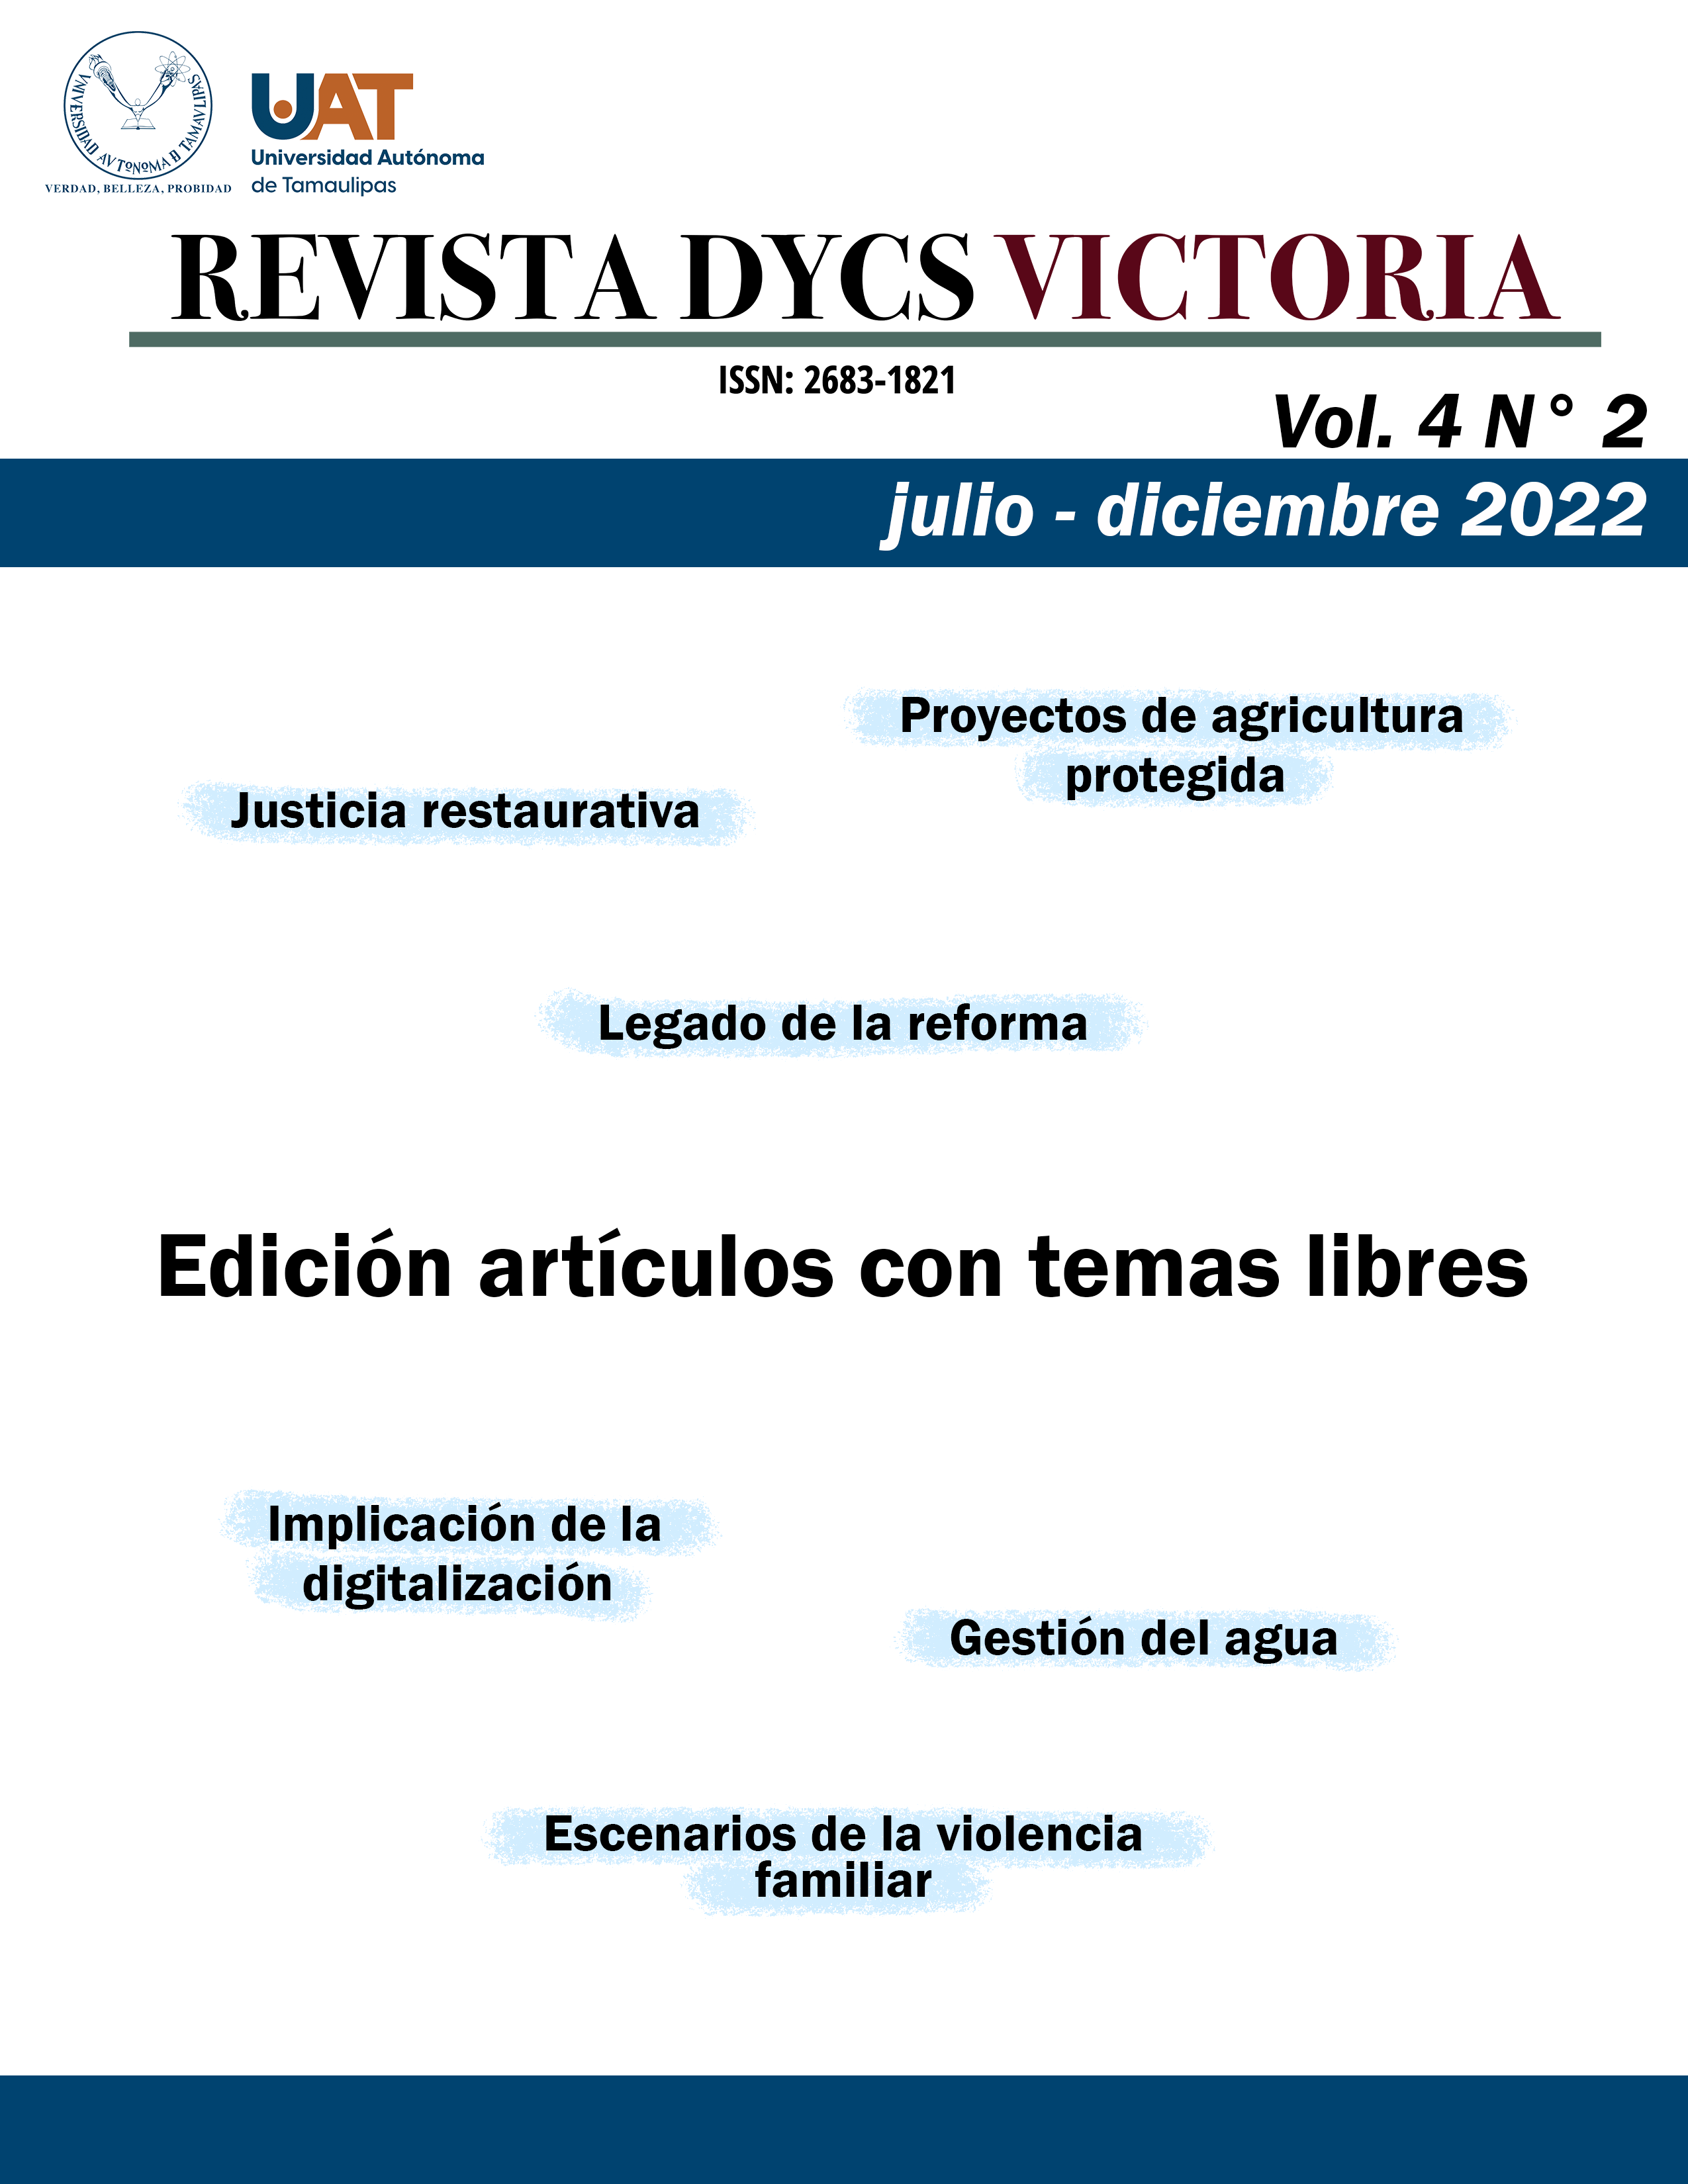 Vol. 4 N.º 2 (julio - diciembre 2022): Edición artículos con temas libres